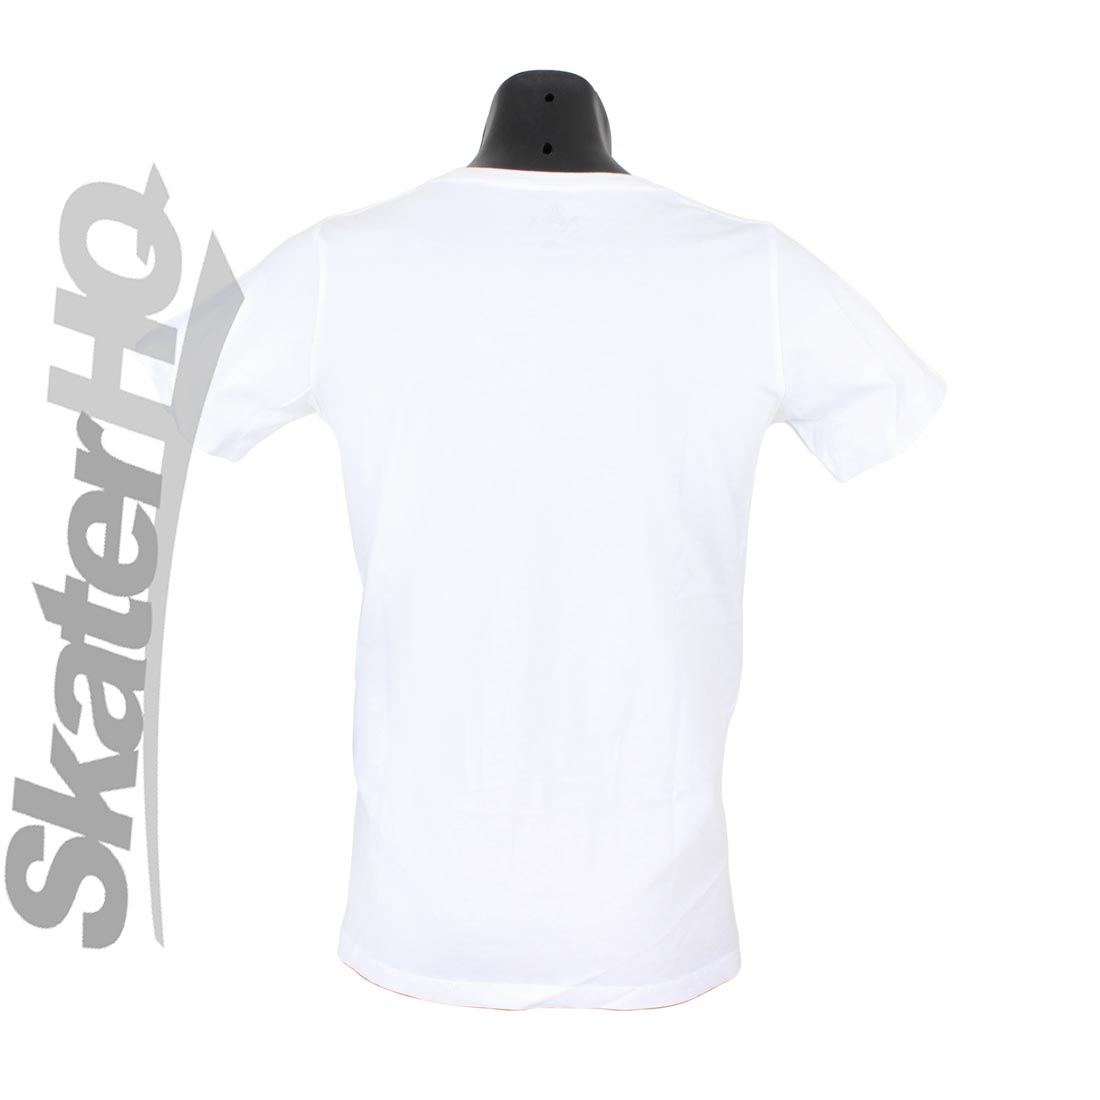 Apex Rainbow Logo T-Shirt White - Medium Apparel Tshirts